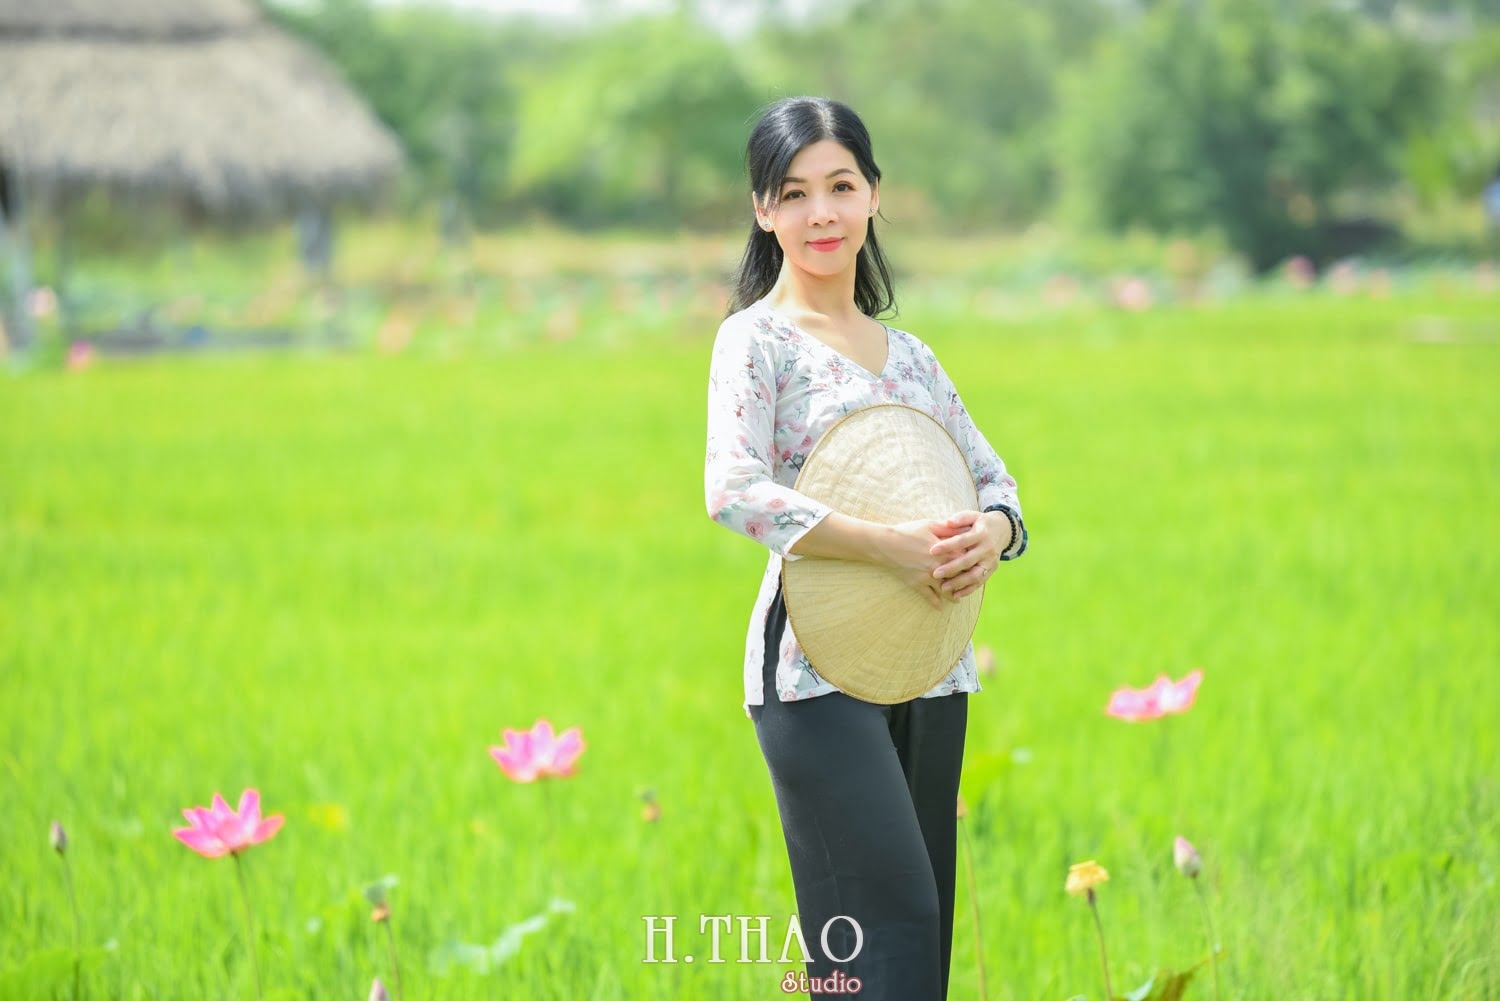 Anh Hoa sen 42 min - Tháng 6, chụp hình với hoa sen tại Tam đa quận 9 – Tp.HCM